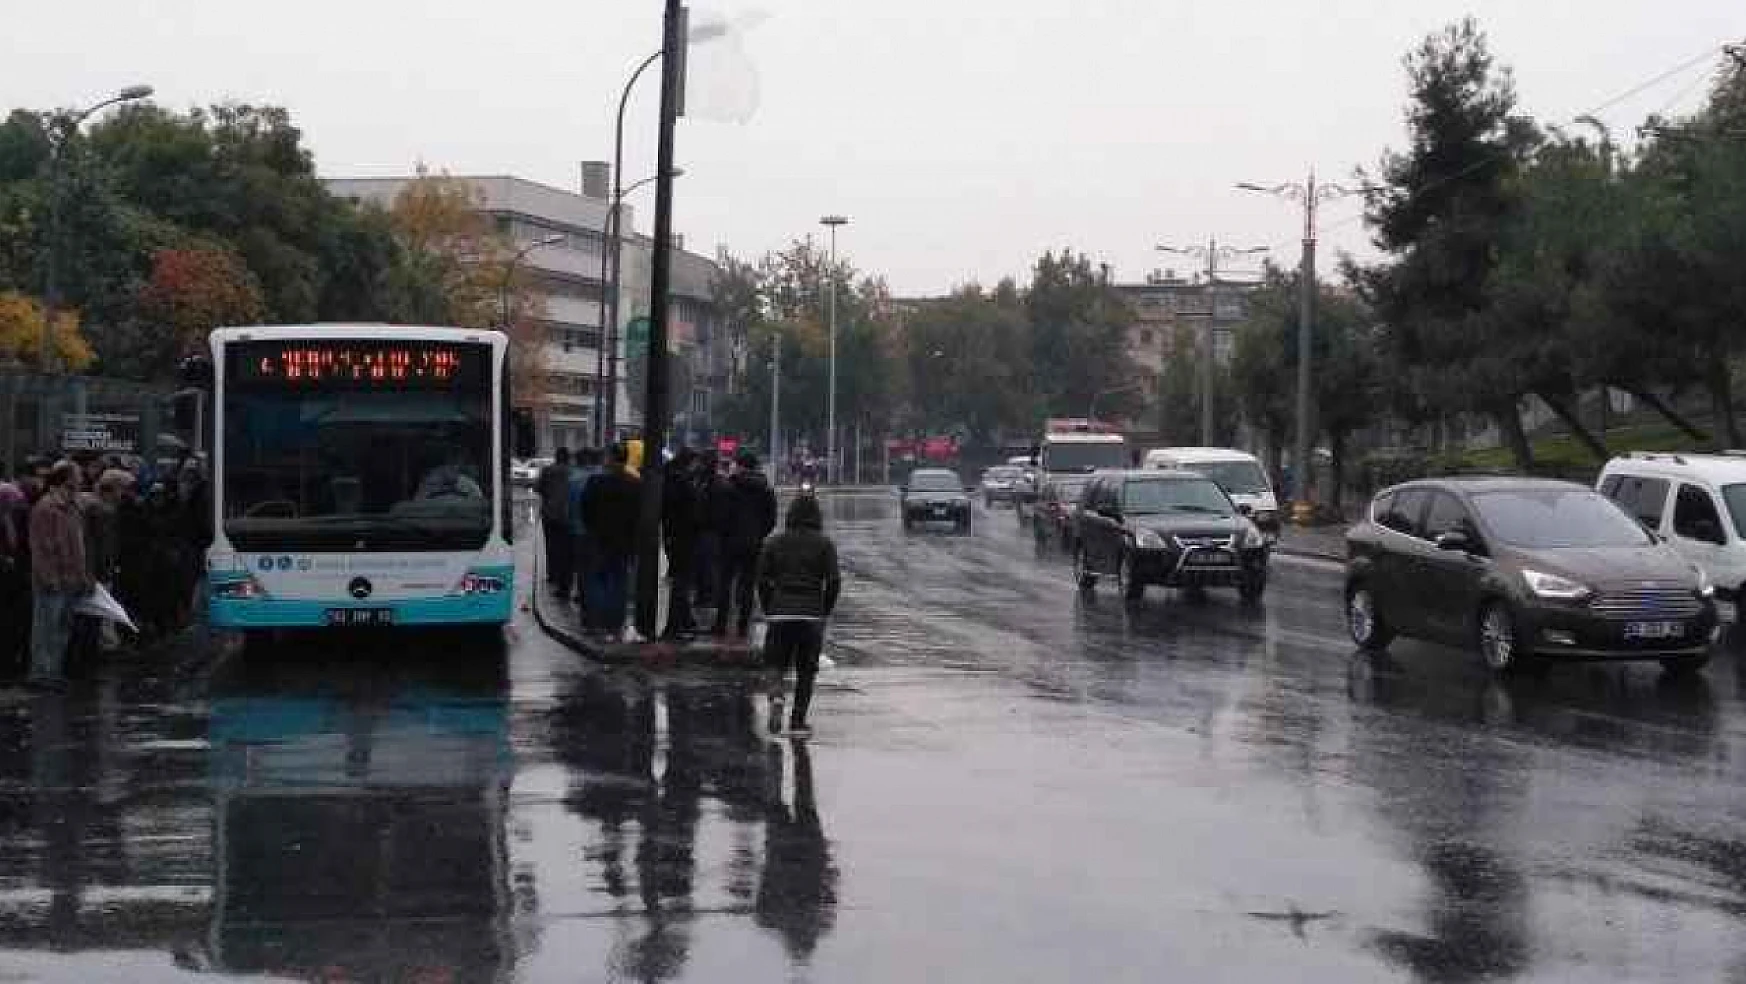 Hafta bitmeden Konya'ya kar geliyor: Şemsiyeleri almayı unutmayın! 3 gün yağış var